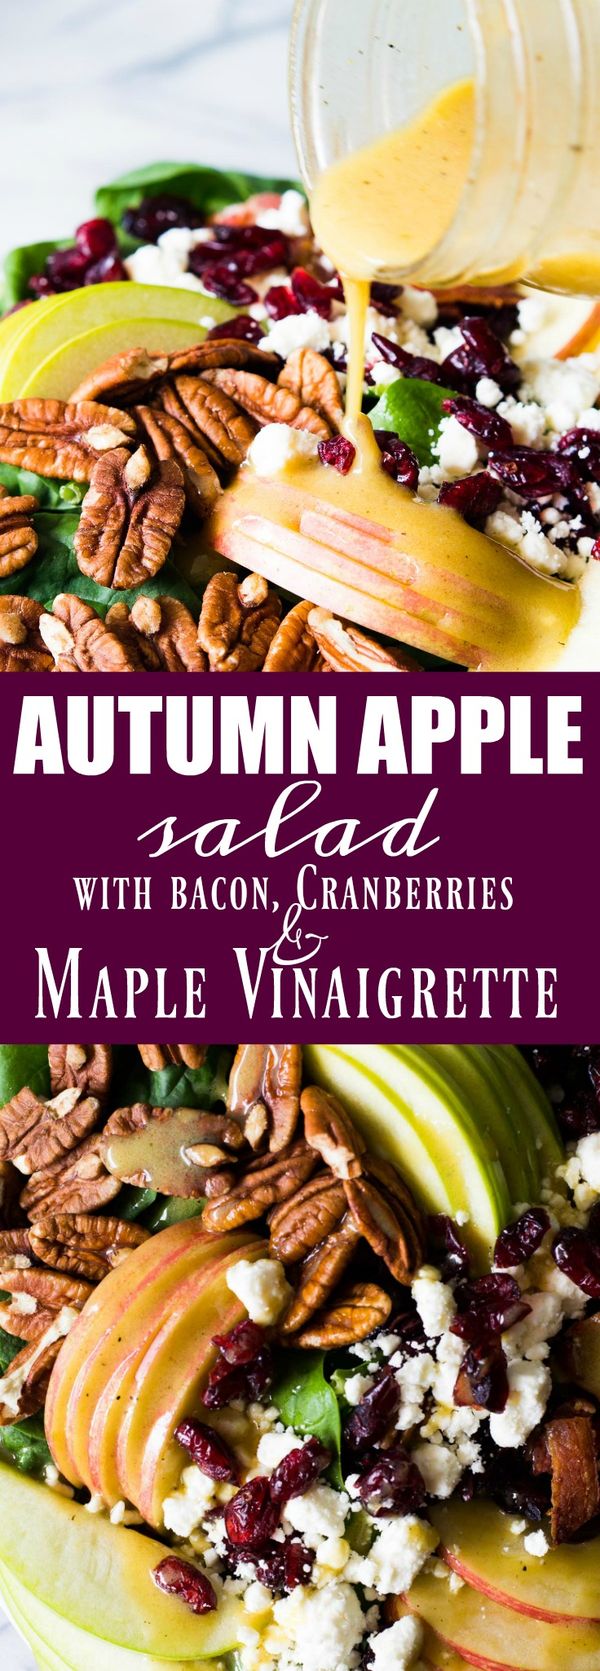 Autumn Apple Salad with a Maple Vinaigrette